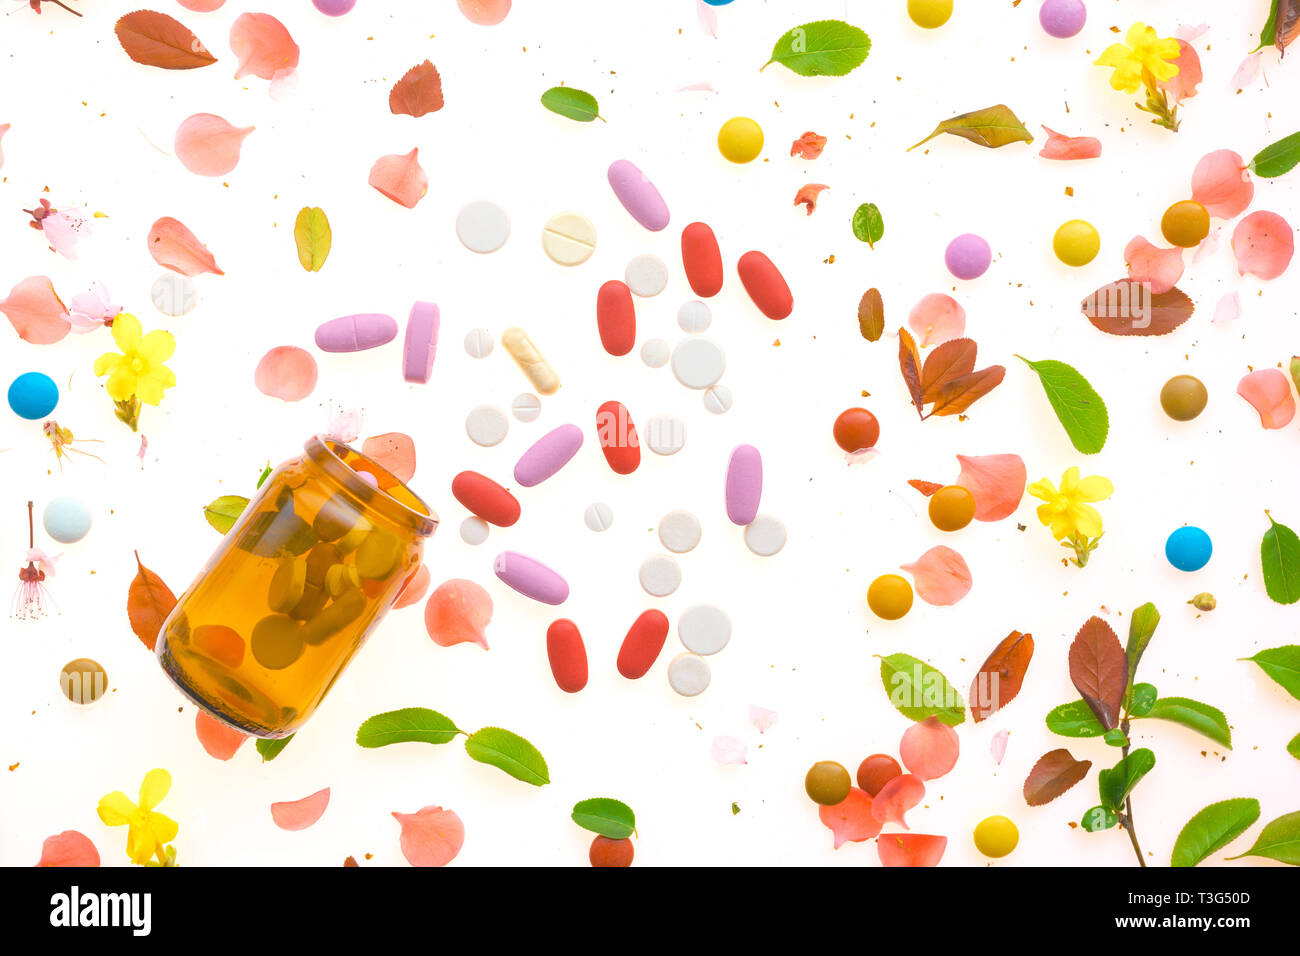 Le droghe ricreative concettuale laici flat top vista di vari farmaci su sfondo colorato Foto Stock